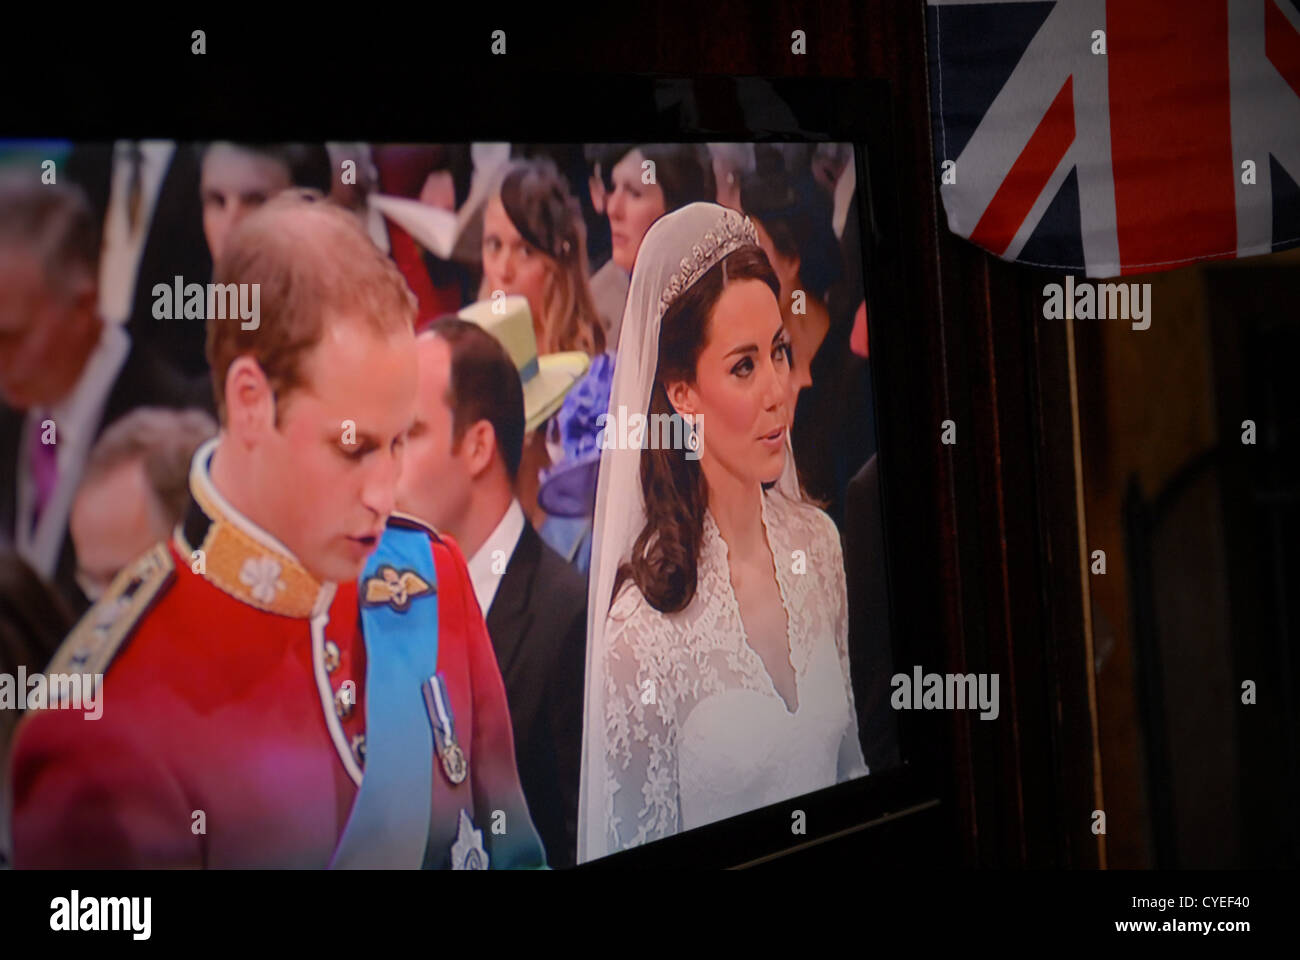 Mariage du Prince William et Catherine Middleton, duc et duchesse de Cambridge. Vendredi 29 avril 2011. TV / Nouvelle Capture. Banque D'Images